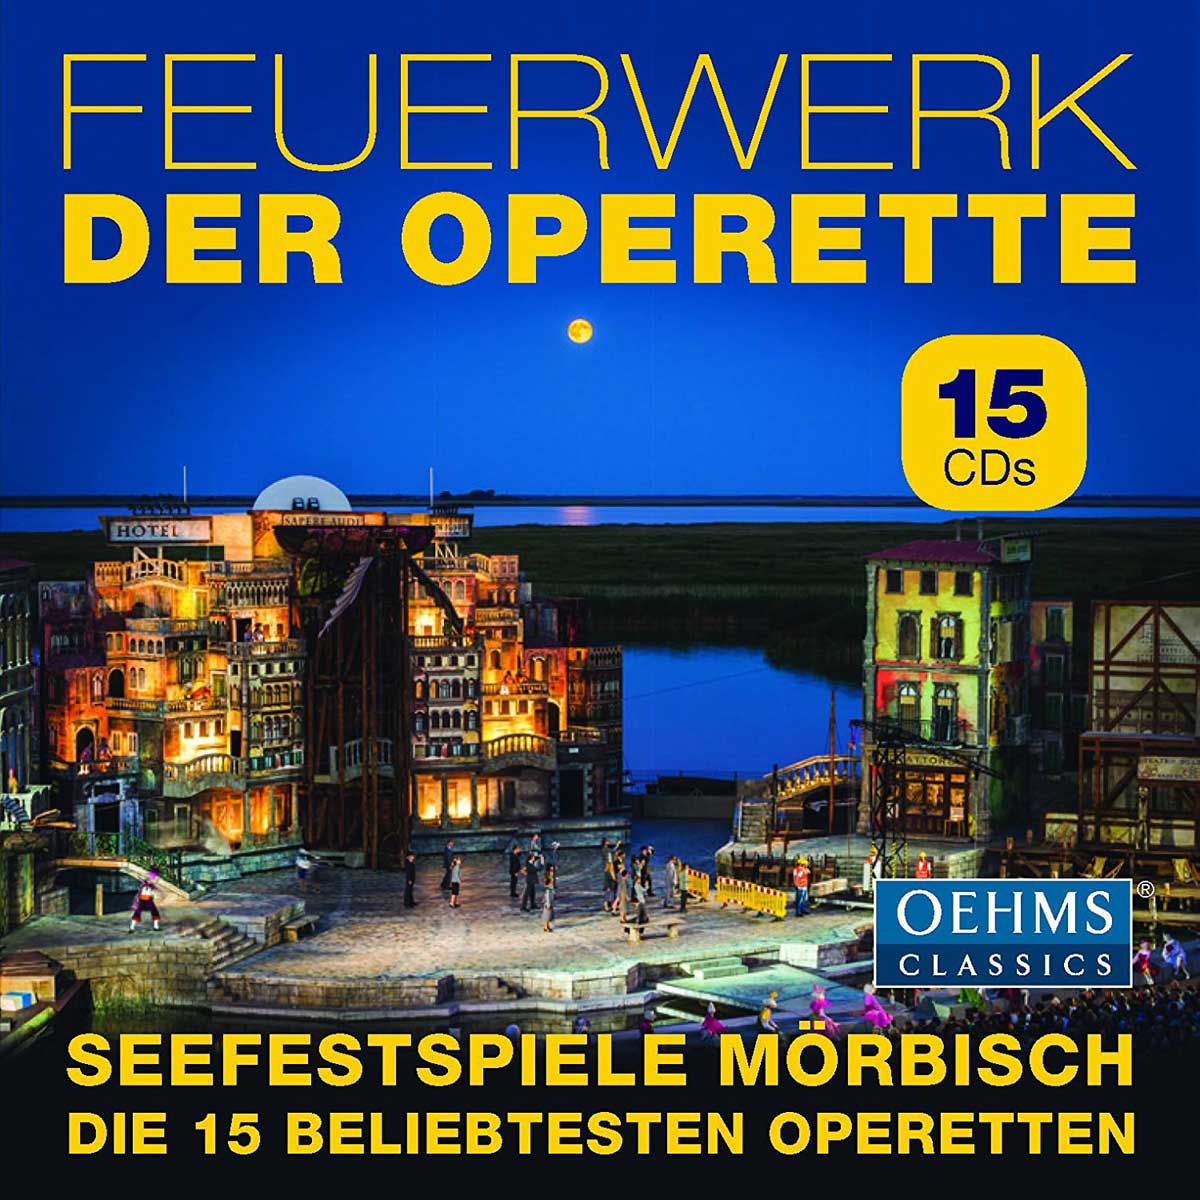 Audio Cd Feuerwerk Der Operette: Seefestspiele Morbisch (15 Cd) NUOVO SIGILLATO, EDIZIONE DEL 27/05/2016 SUBITO DISPONIBILE